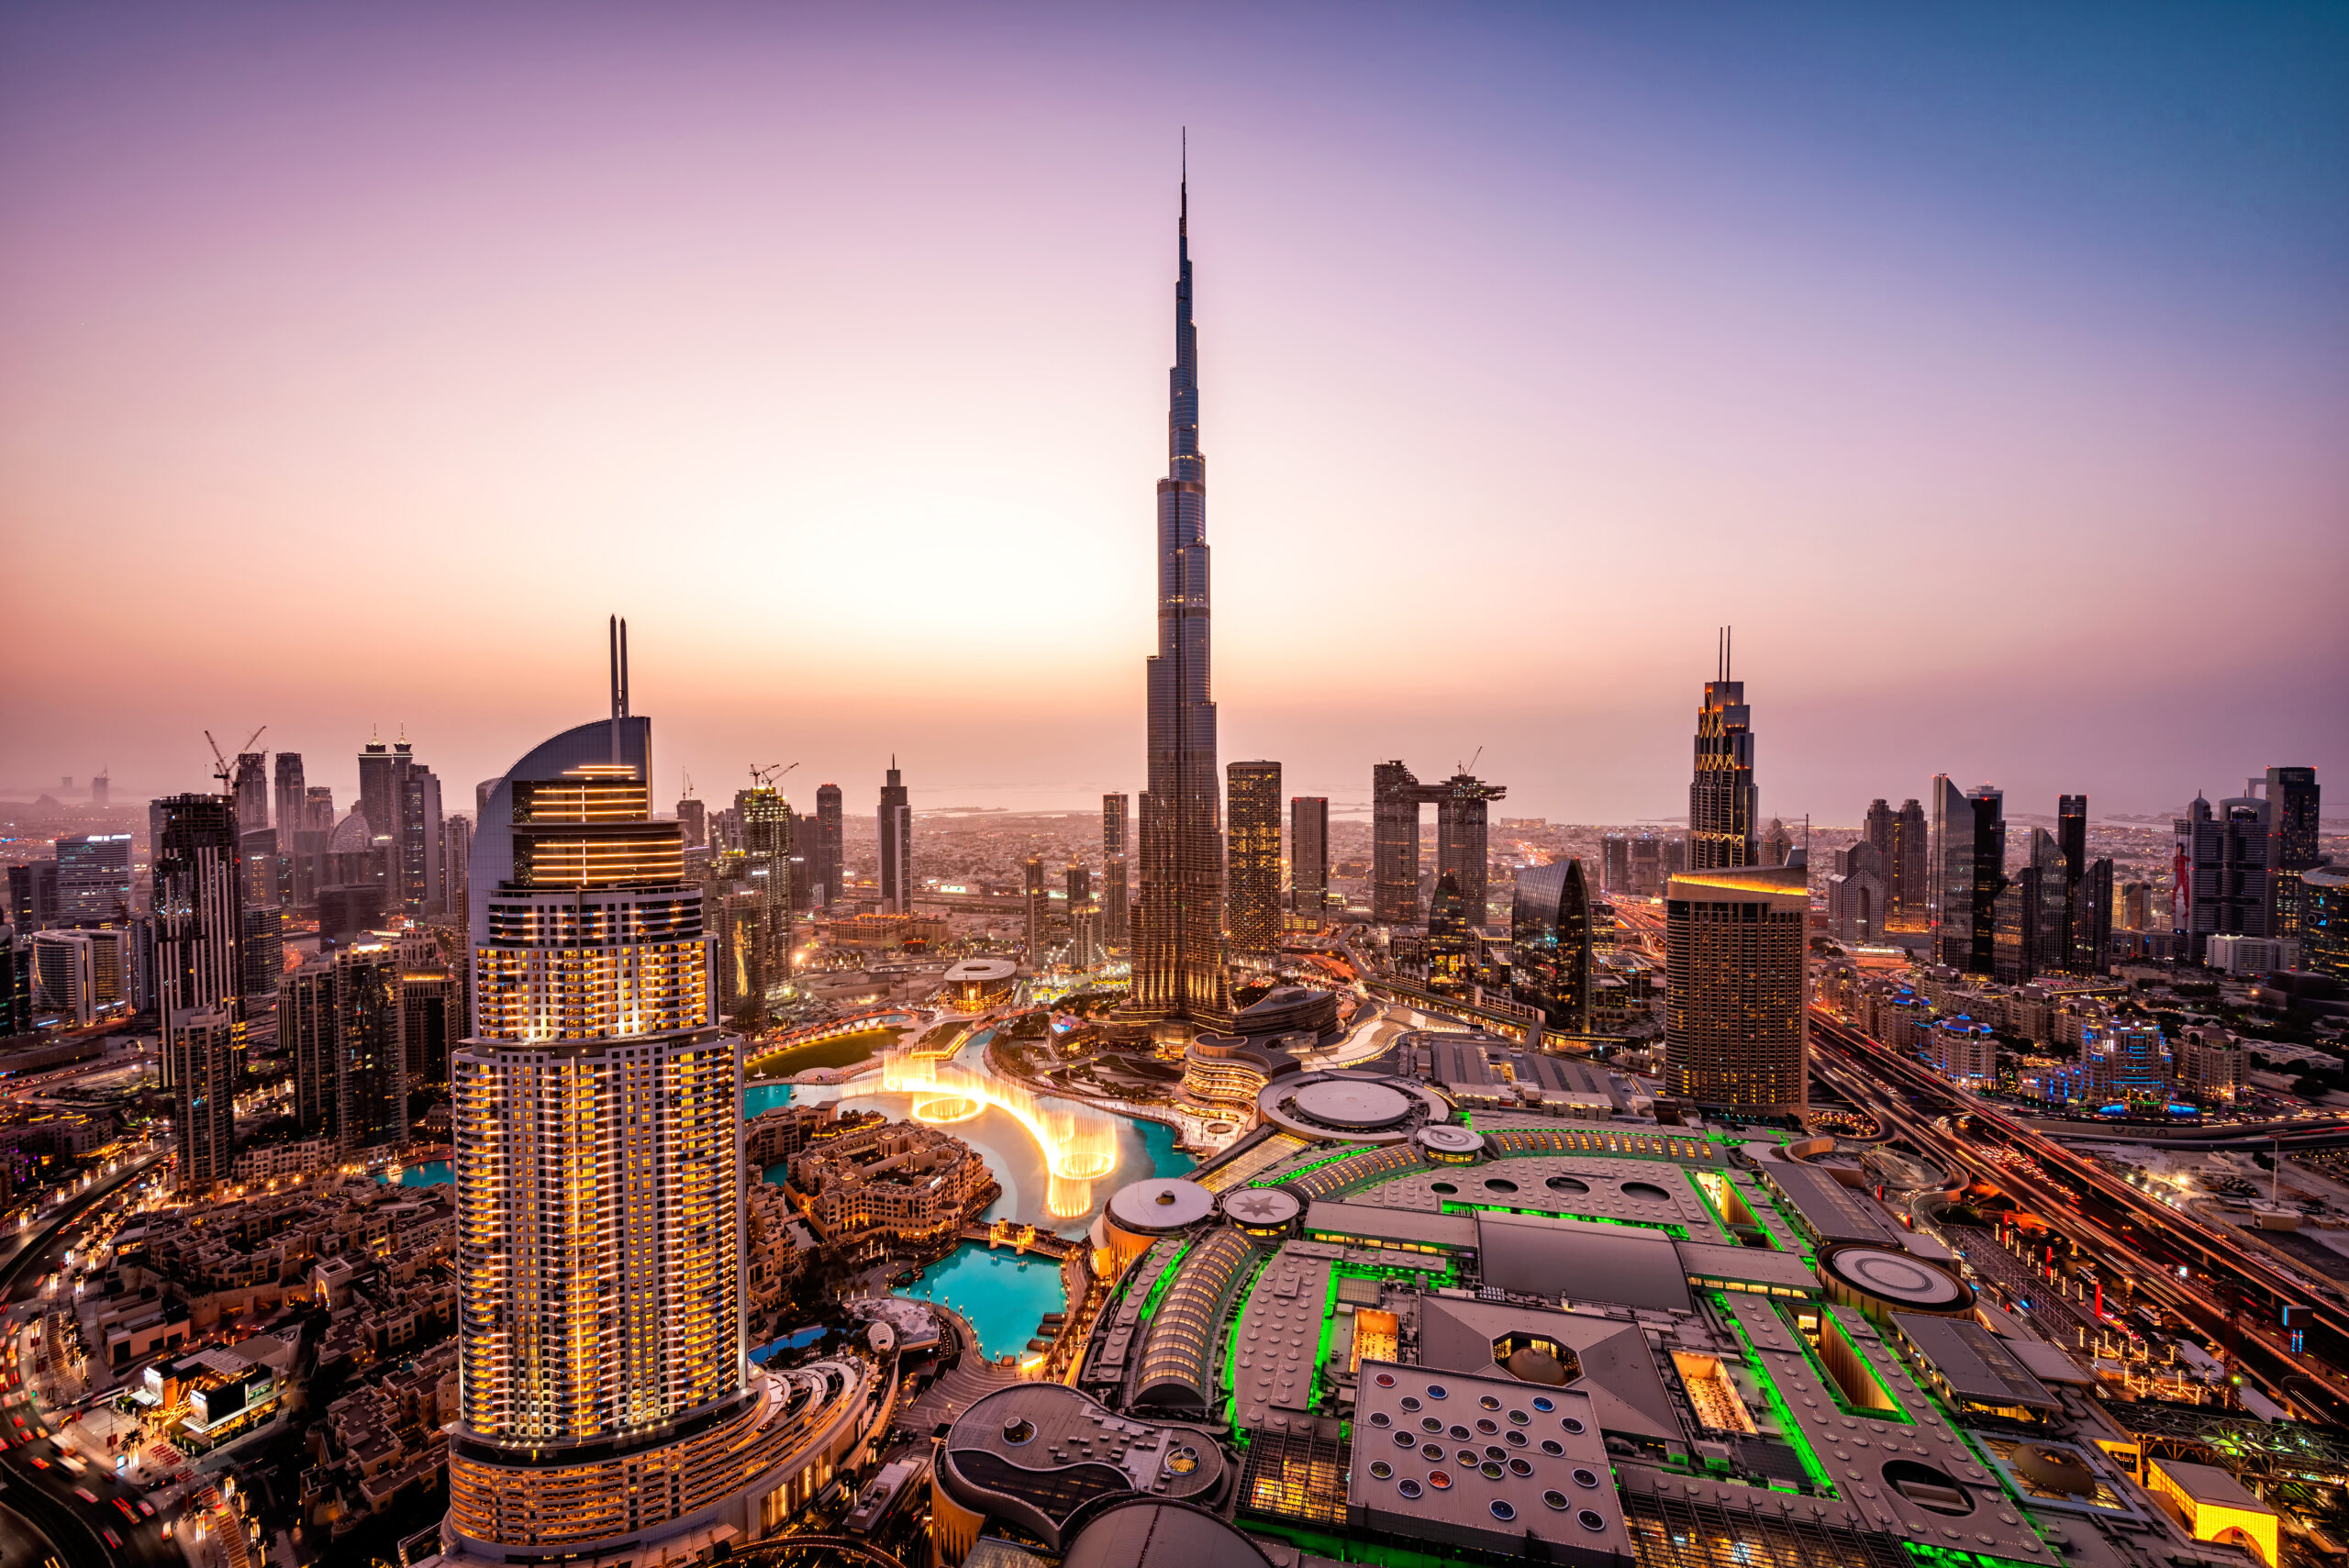 Dubai skyline at sunset with Burj Khalifa|||